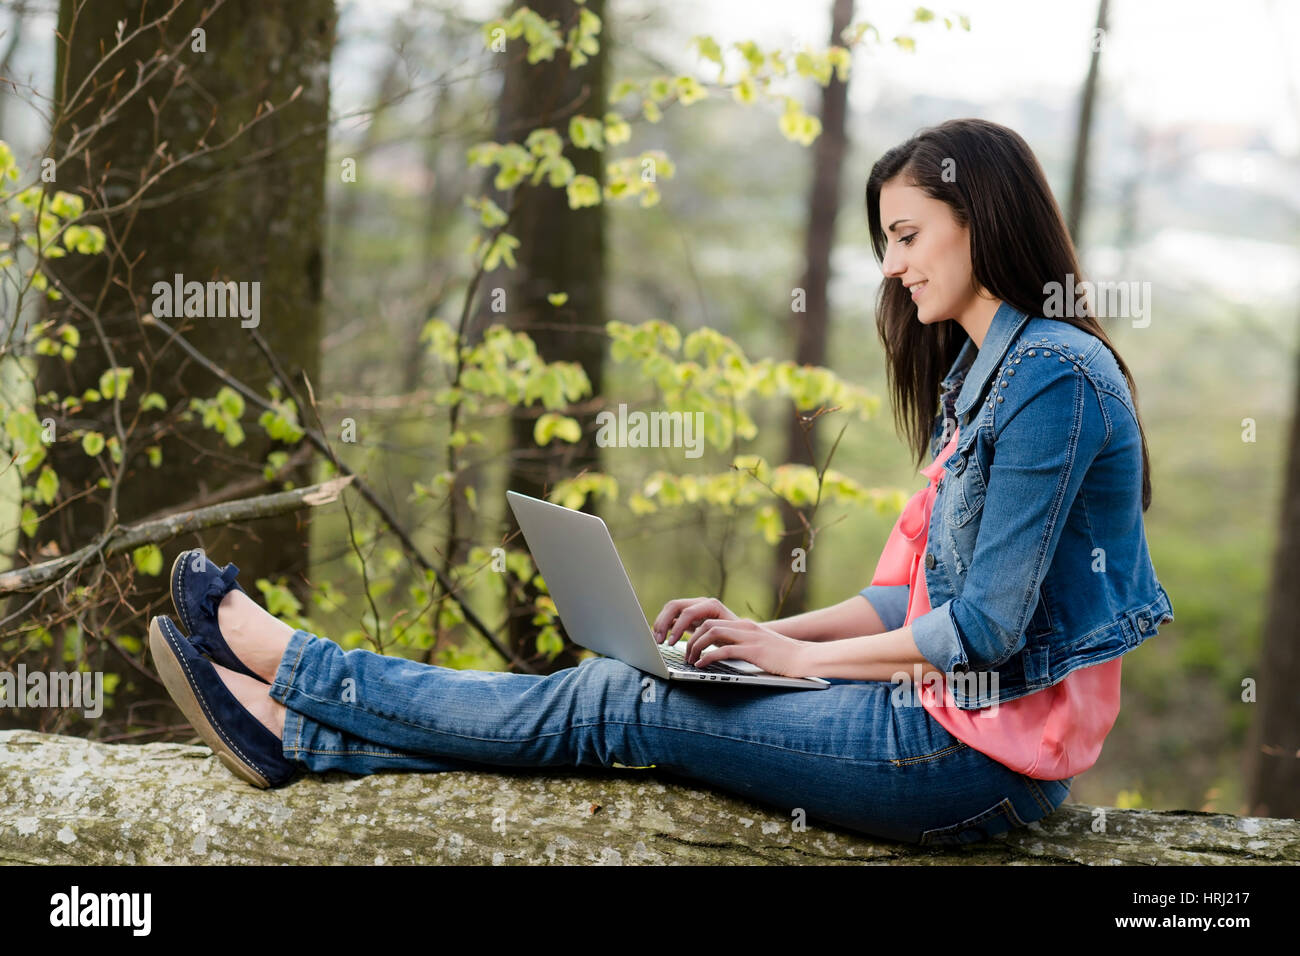 Junge Frau sitzt mit Laptop auf einem gefaellten Baumstamm - woman with laptop in nature Stock Photo